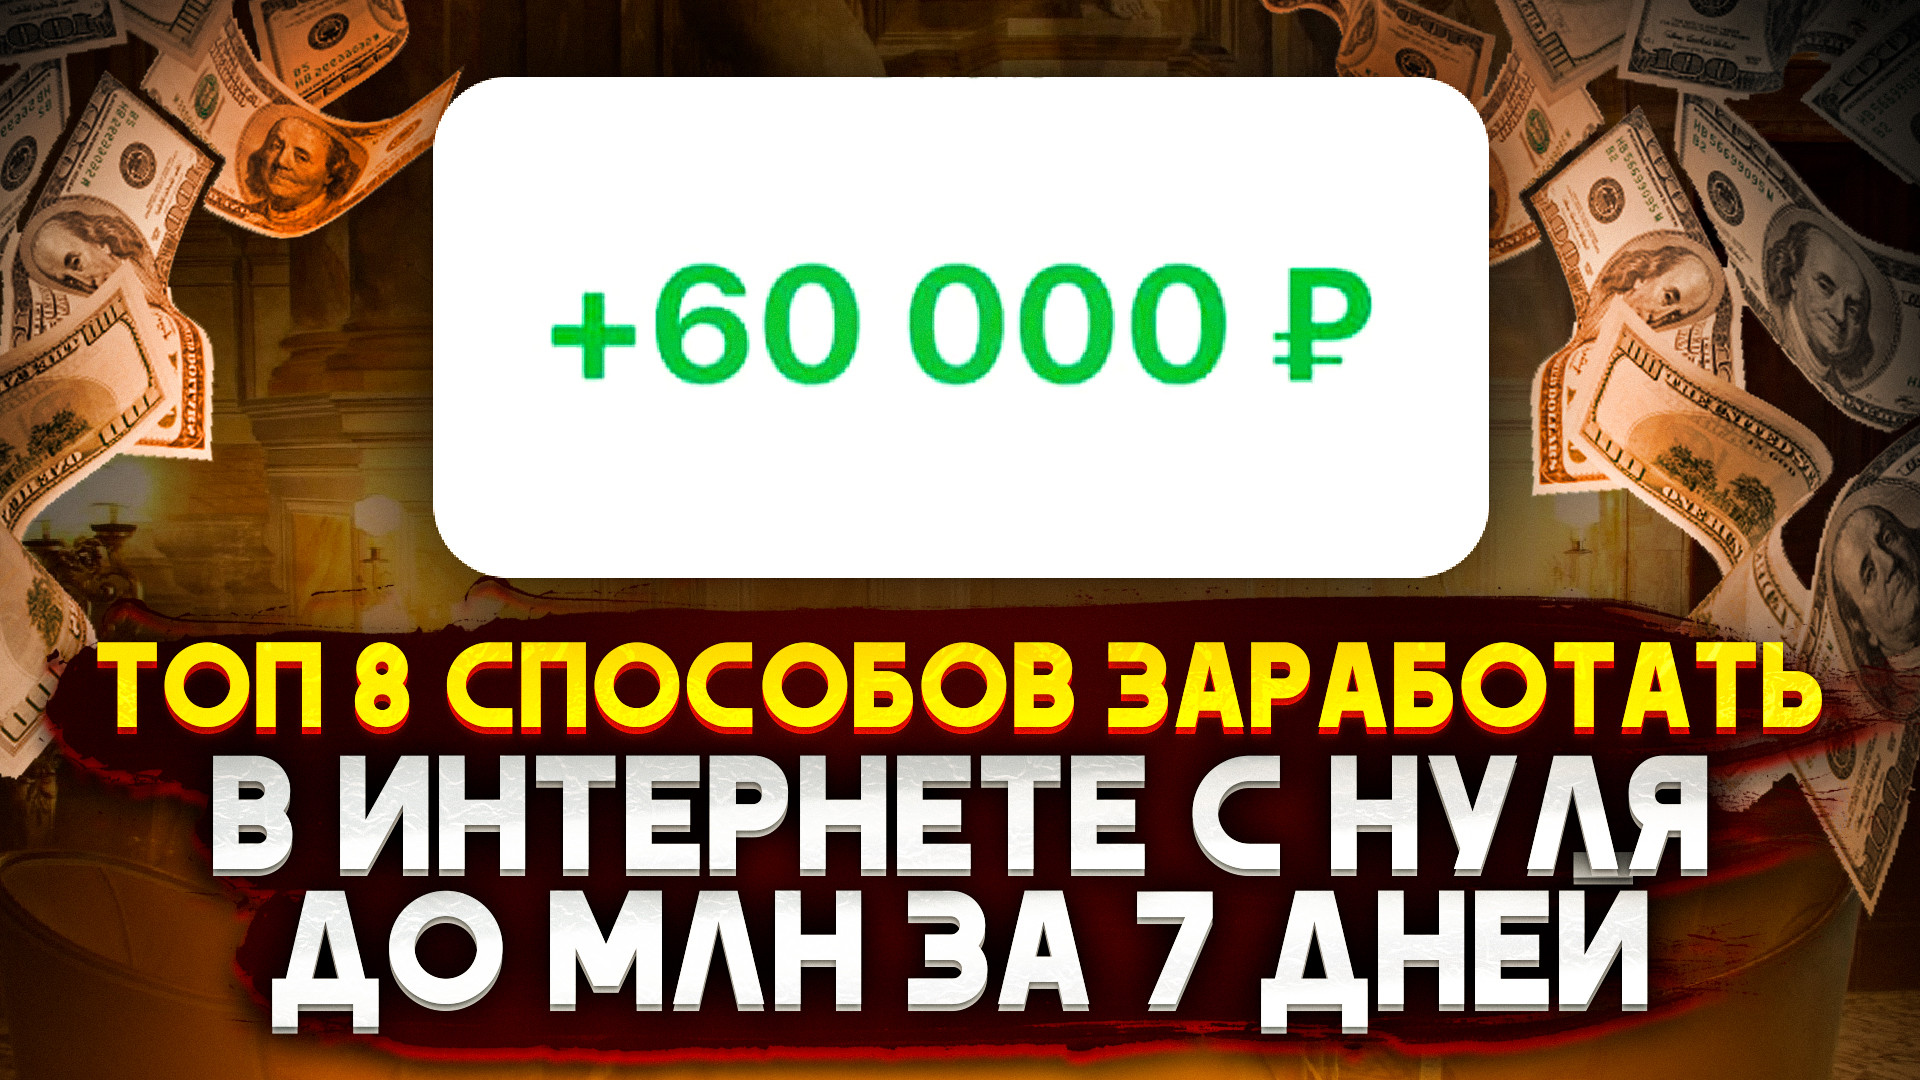 Телеграмм заработок денег без вложений на русском языке фото 38